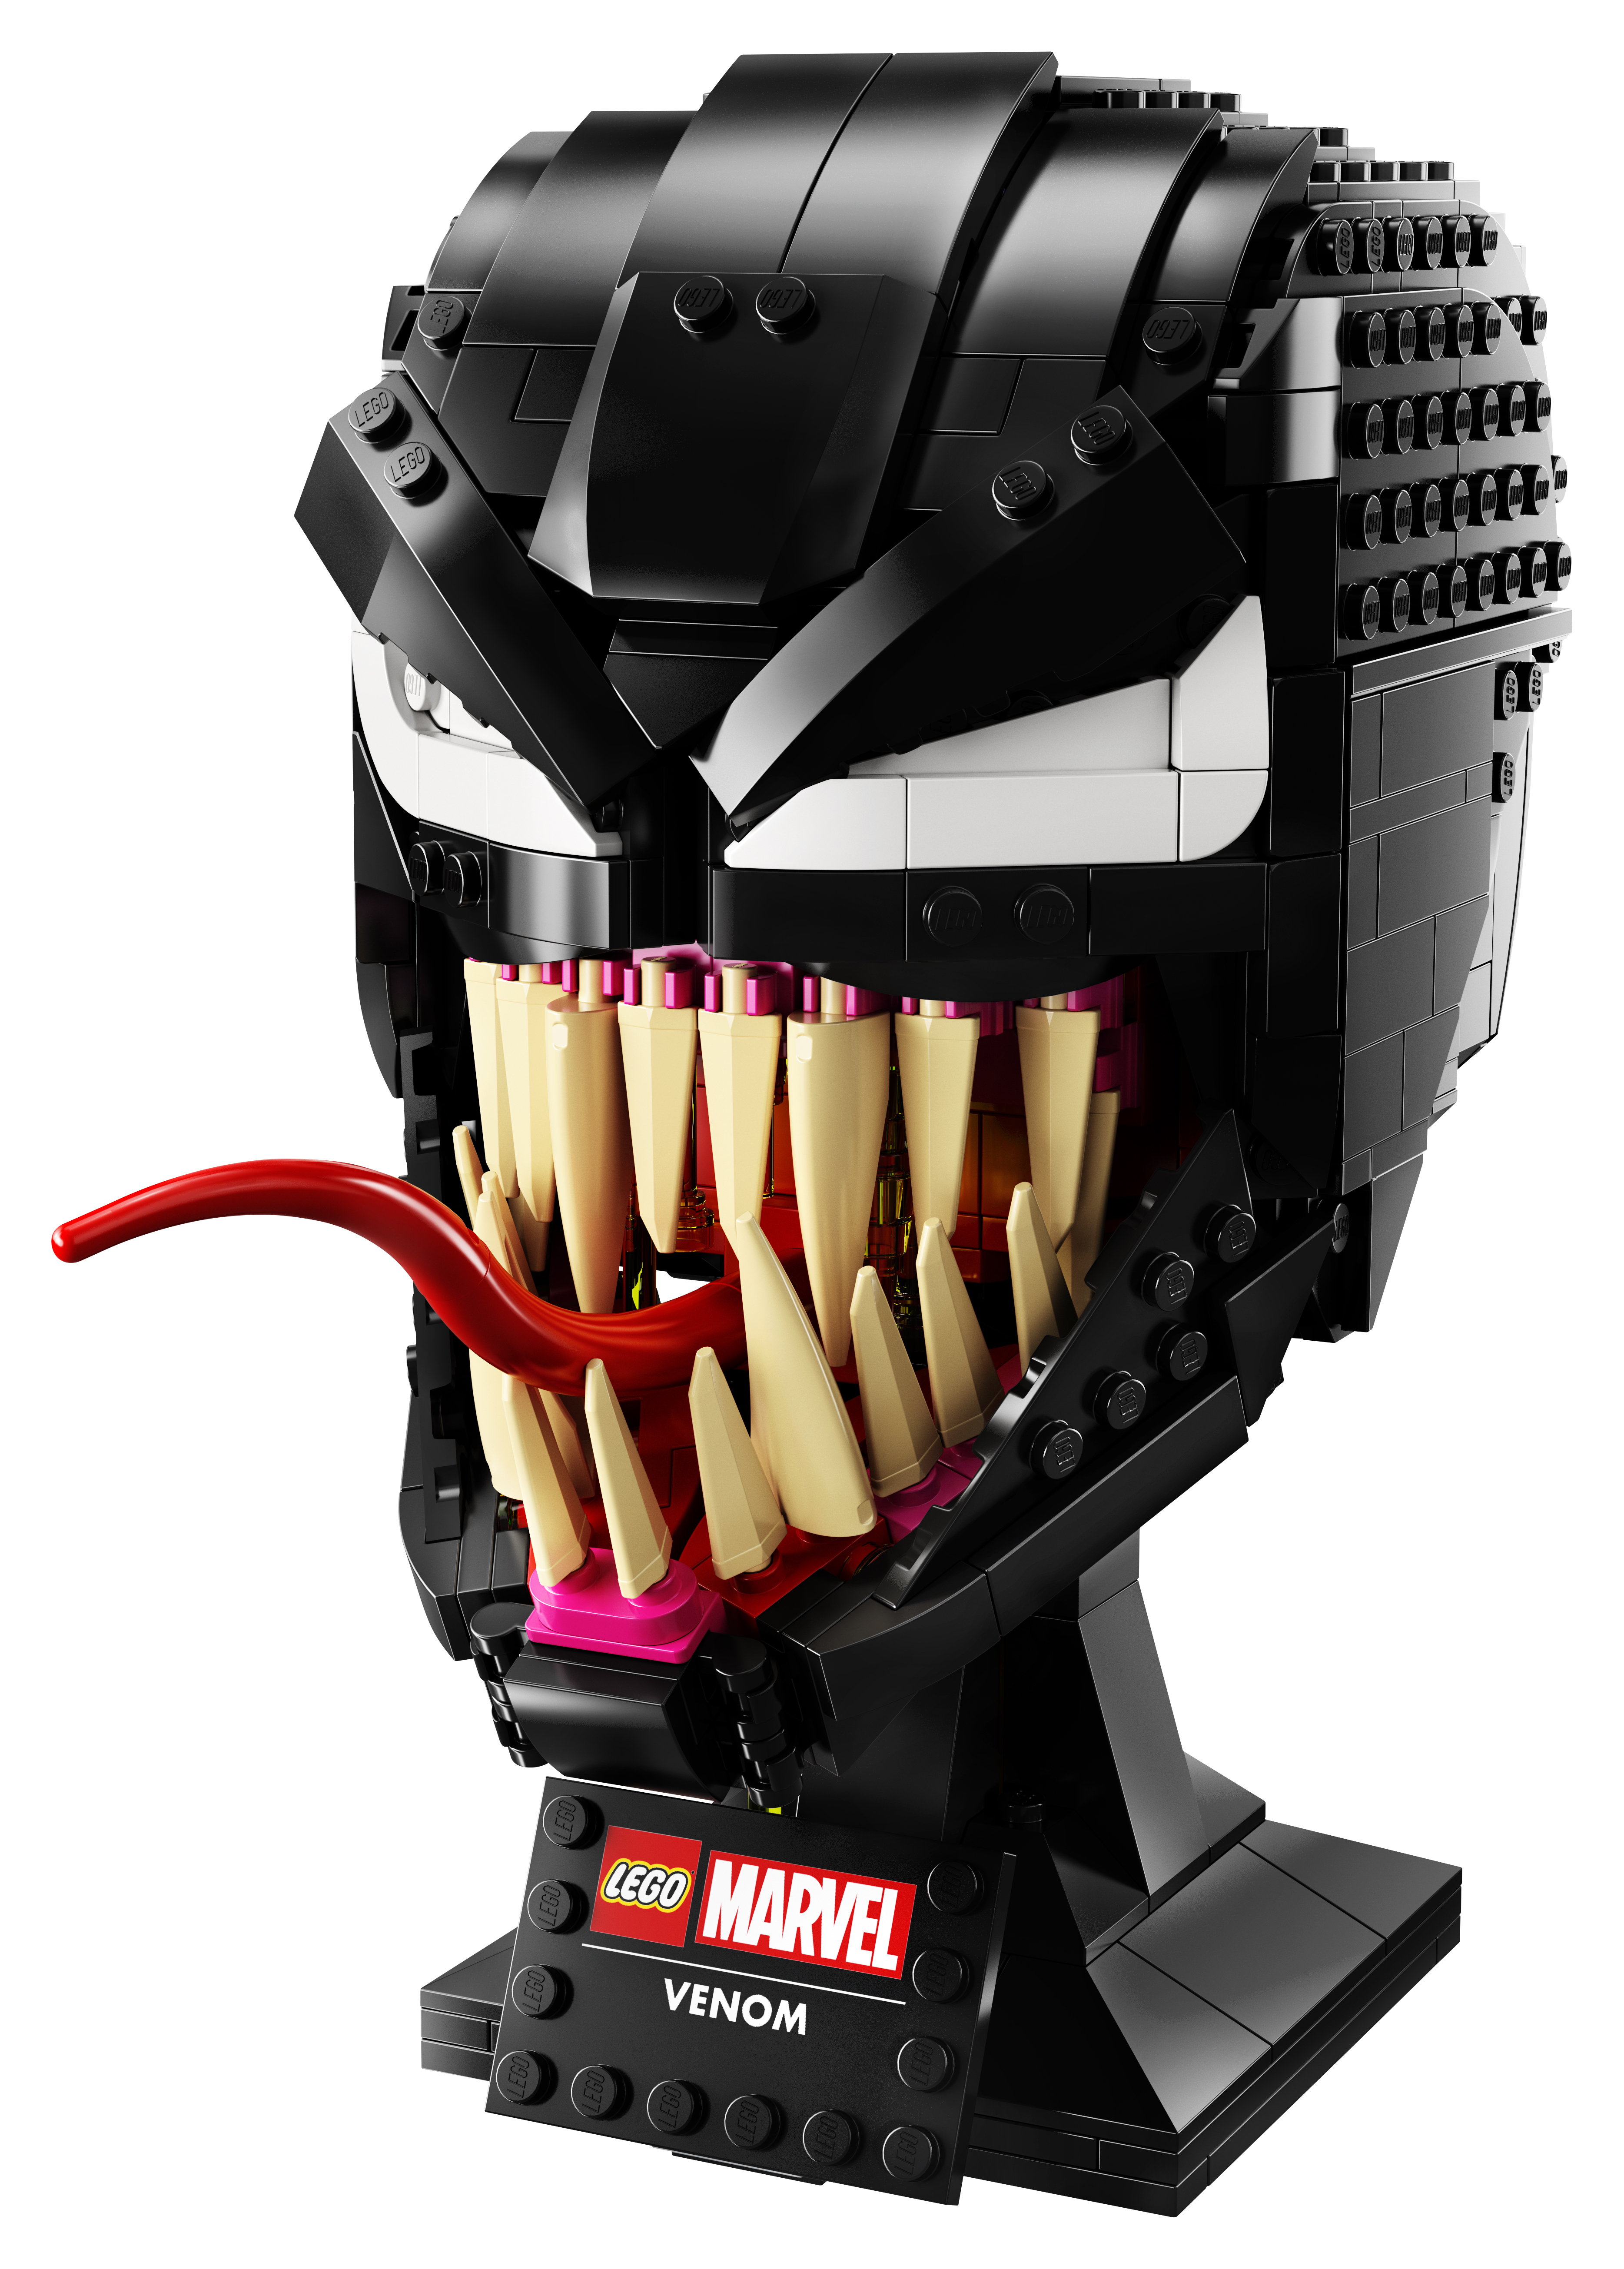  Marvel Venom - 76187